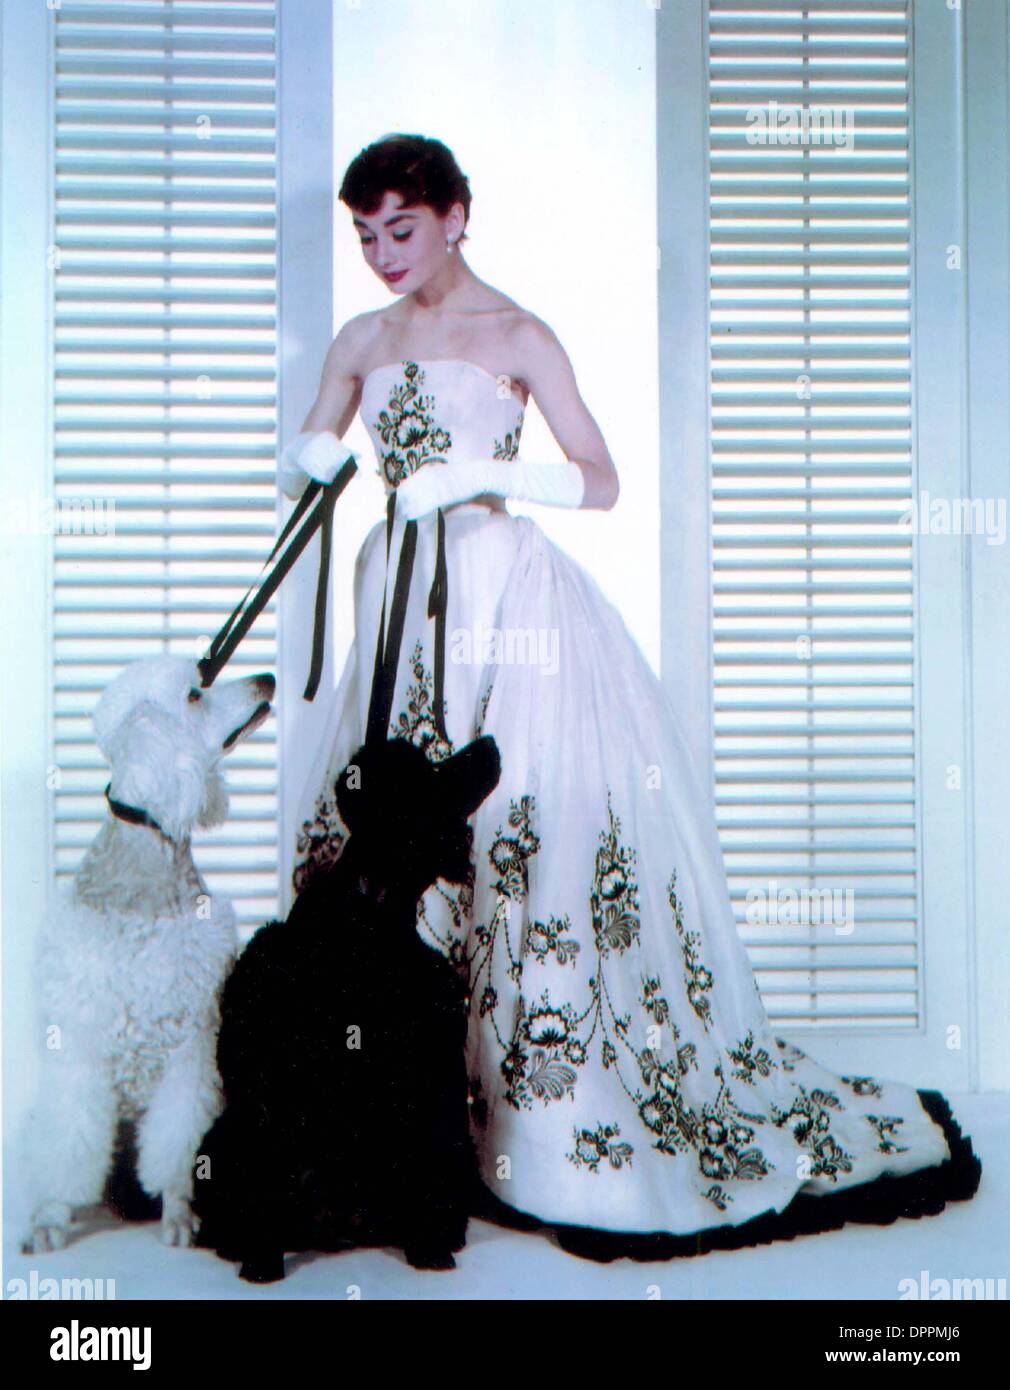 Sett. 25, 2006 - Audrey Hepburn in abito di Givenchy.''SABRINA'' 1954.fornito  di TV-film-ancora credito(Immagine: © Globo foto/ZUMAPRESS.com Foto stock -  Alamy